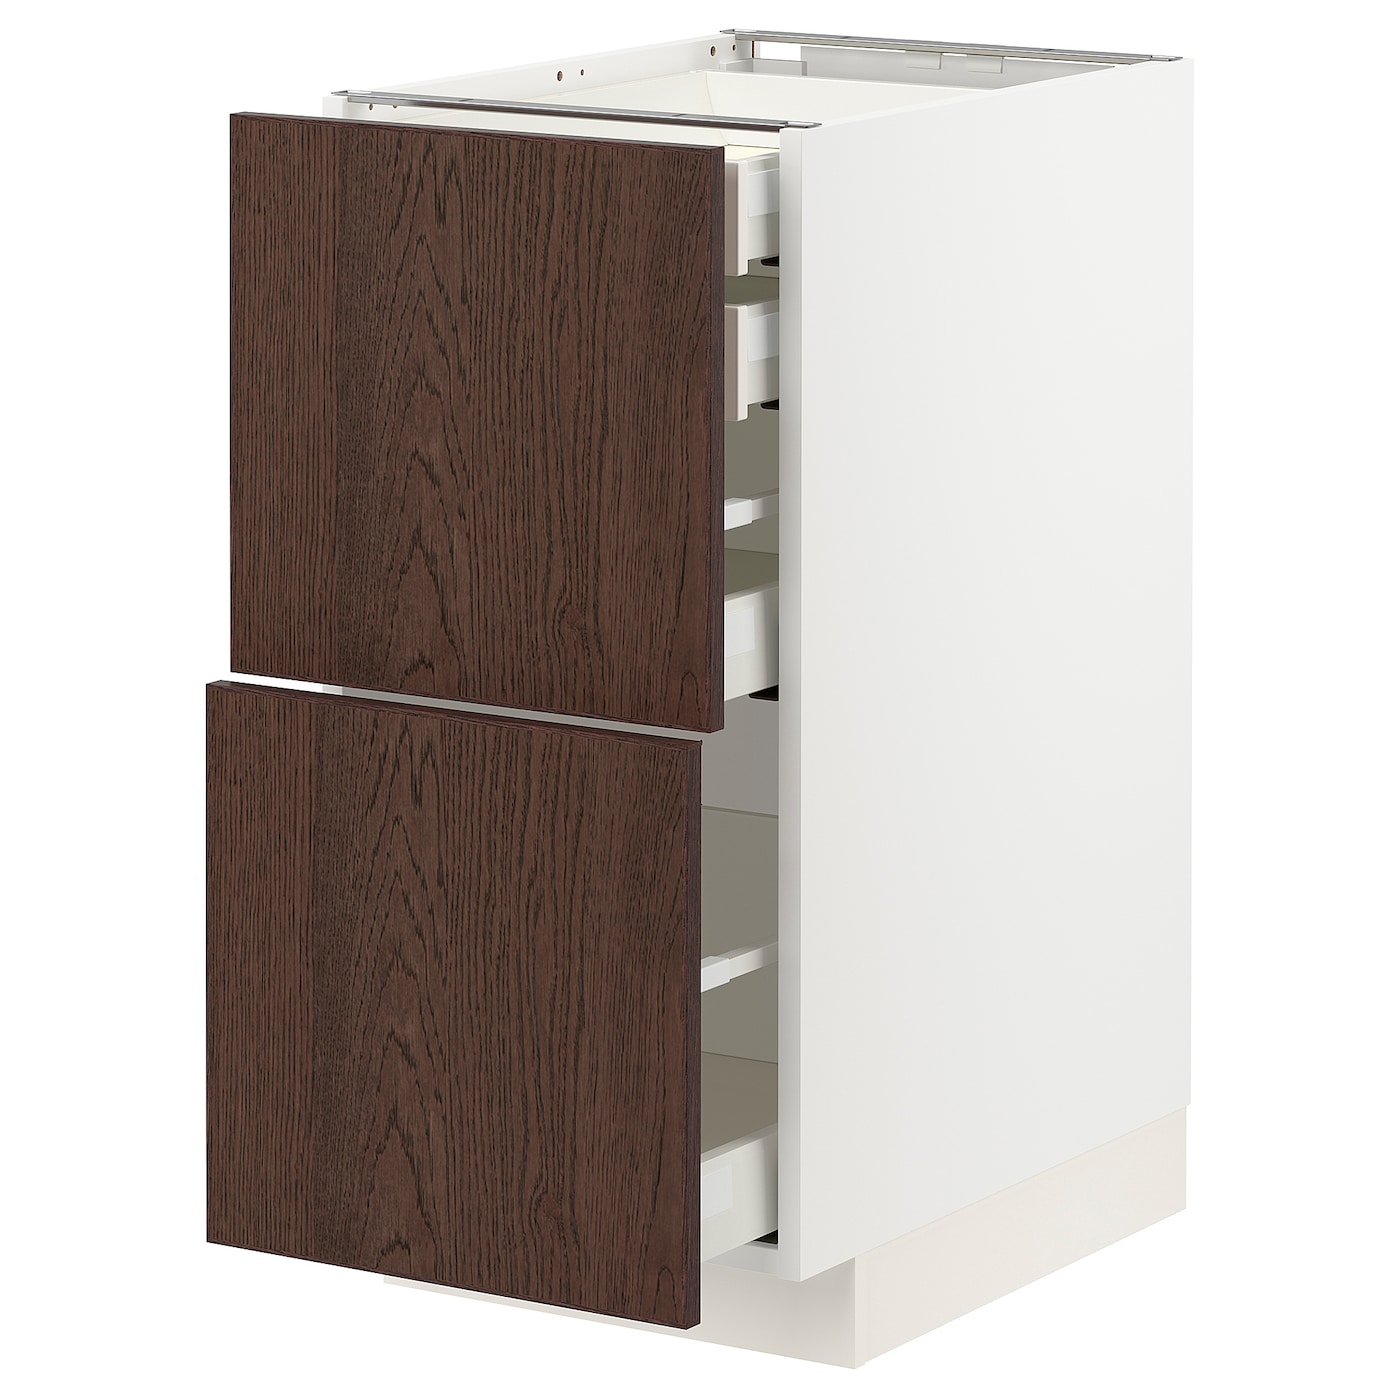 Напольный кухонный шкаф  - IKEA METOD MAXIMERA, 88x61,6x40см, белый/коричневый, МЕТОД МАКСИМЕРА ИКЕА